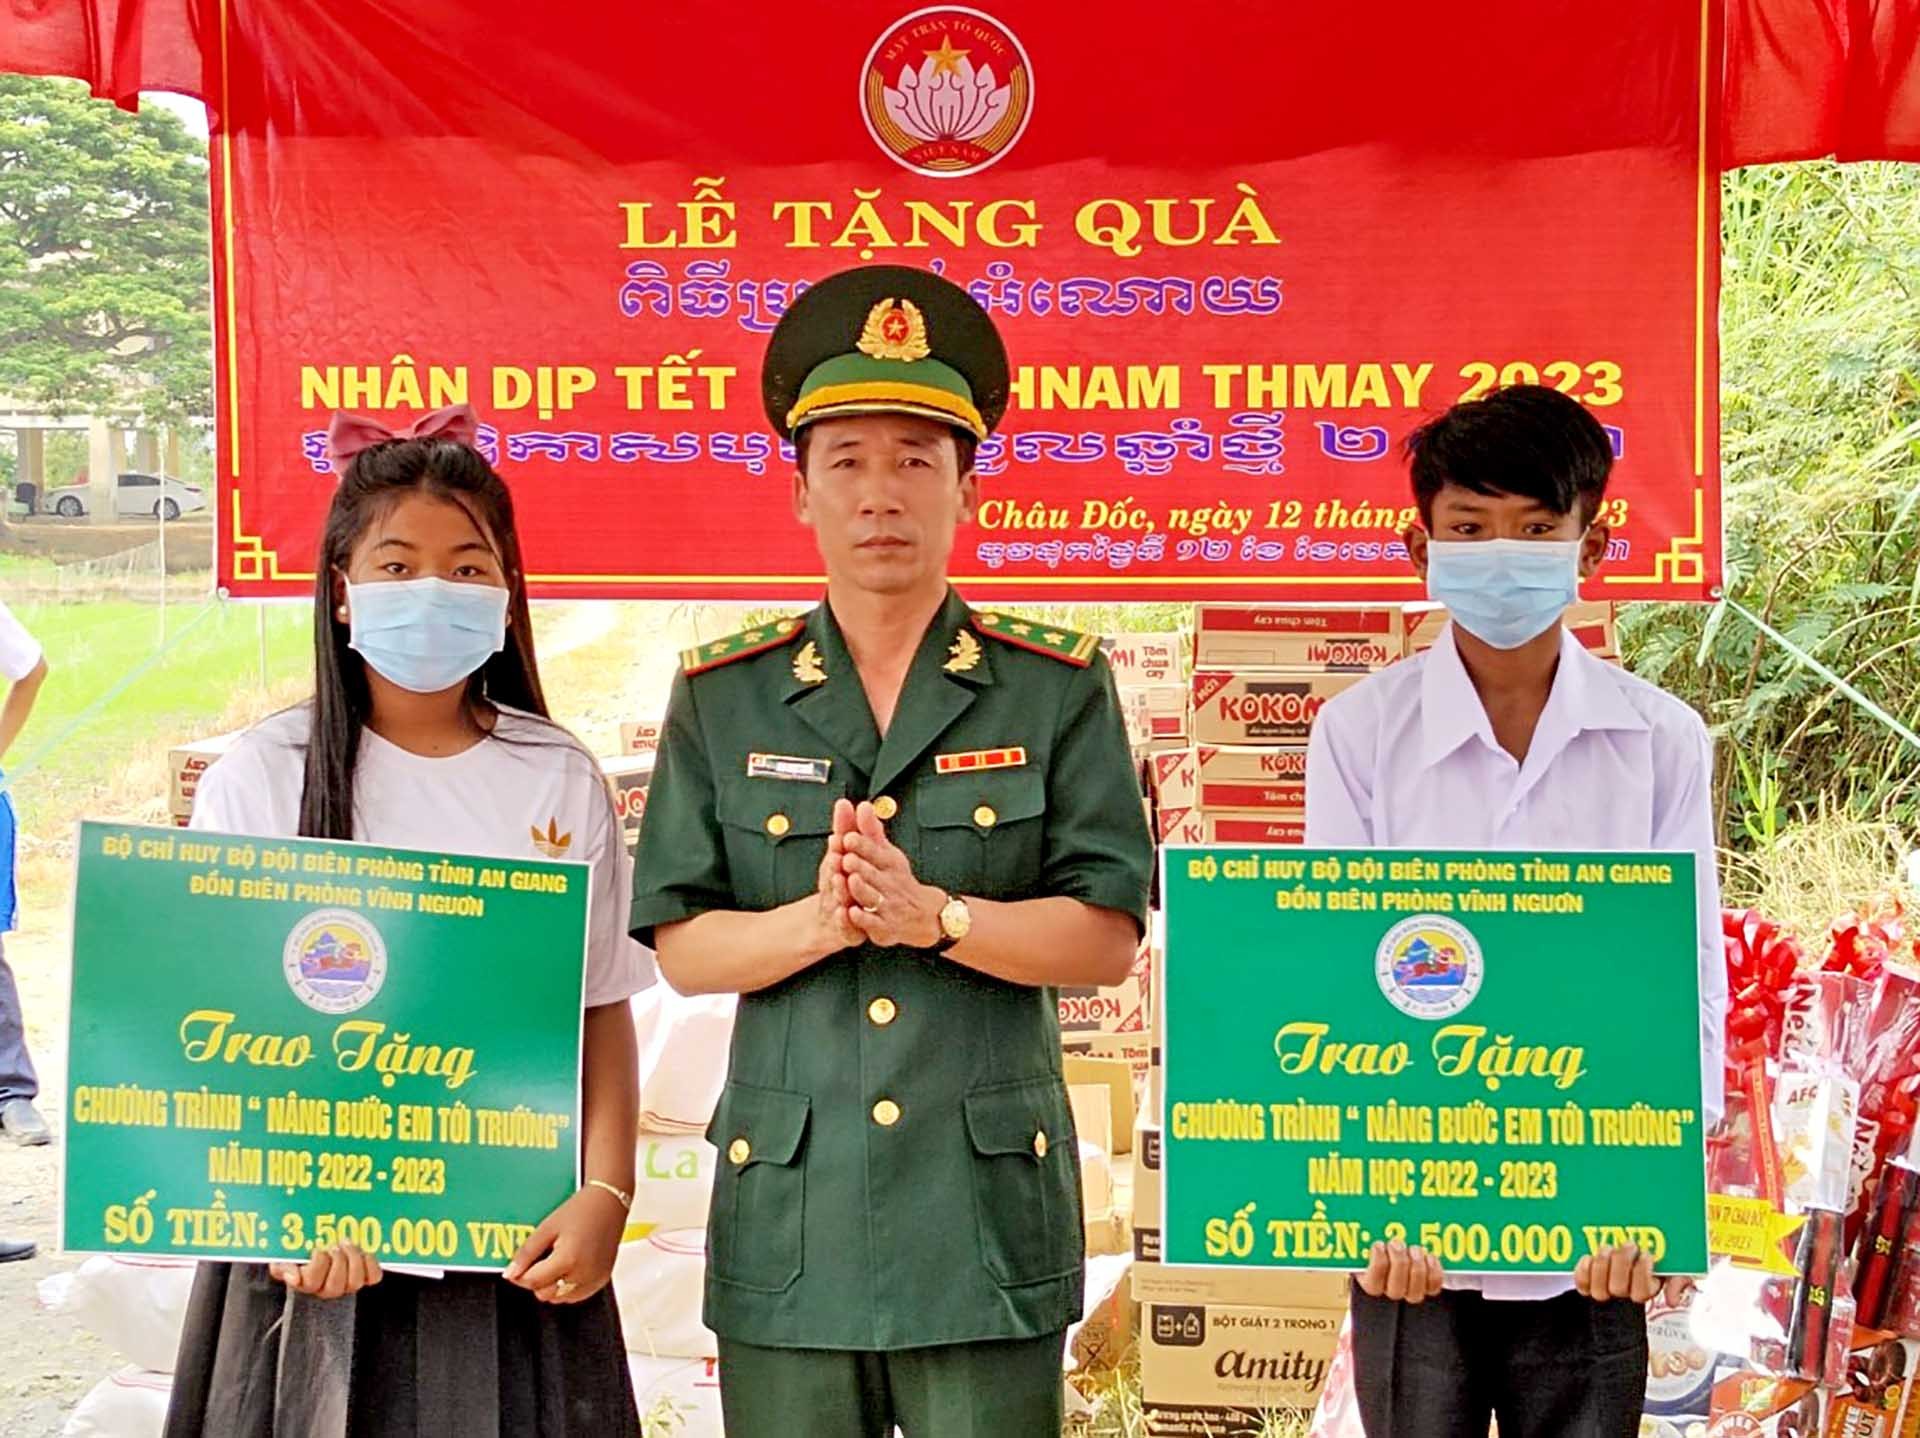 Đồn Biên phòng Vĩnh Nguơn tặng quà cho các em học sinh Campuchia trong Chương trình Nâng bước em tới trường. (Ảnh: Chiến Khu)